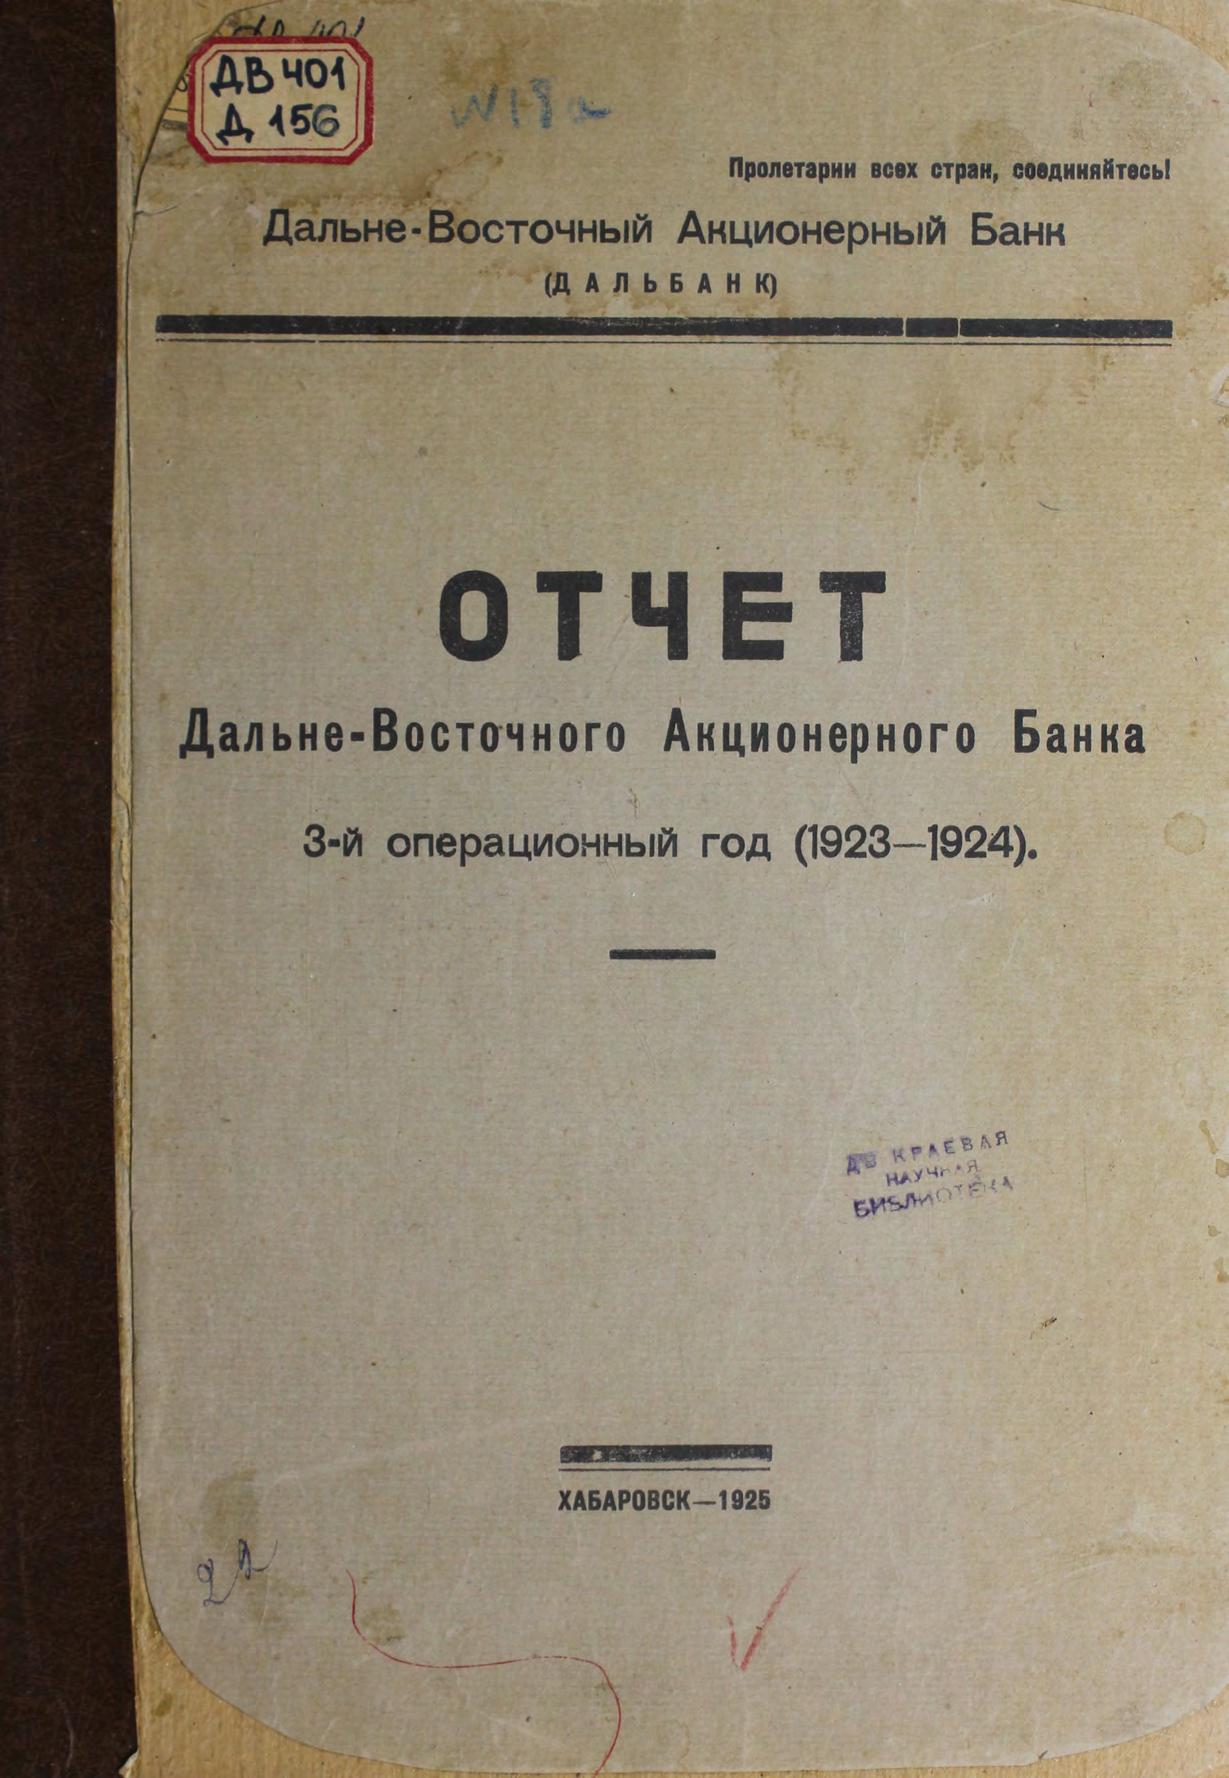 Дальневосточный Акционерный банк. Отчет за 3-й операционный год (1923-1924).